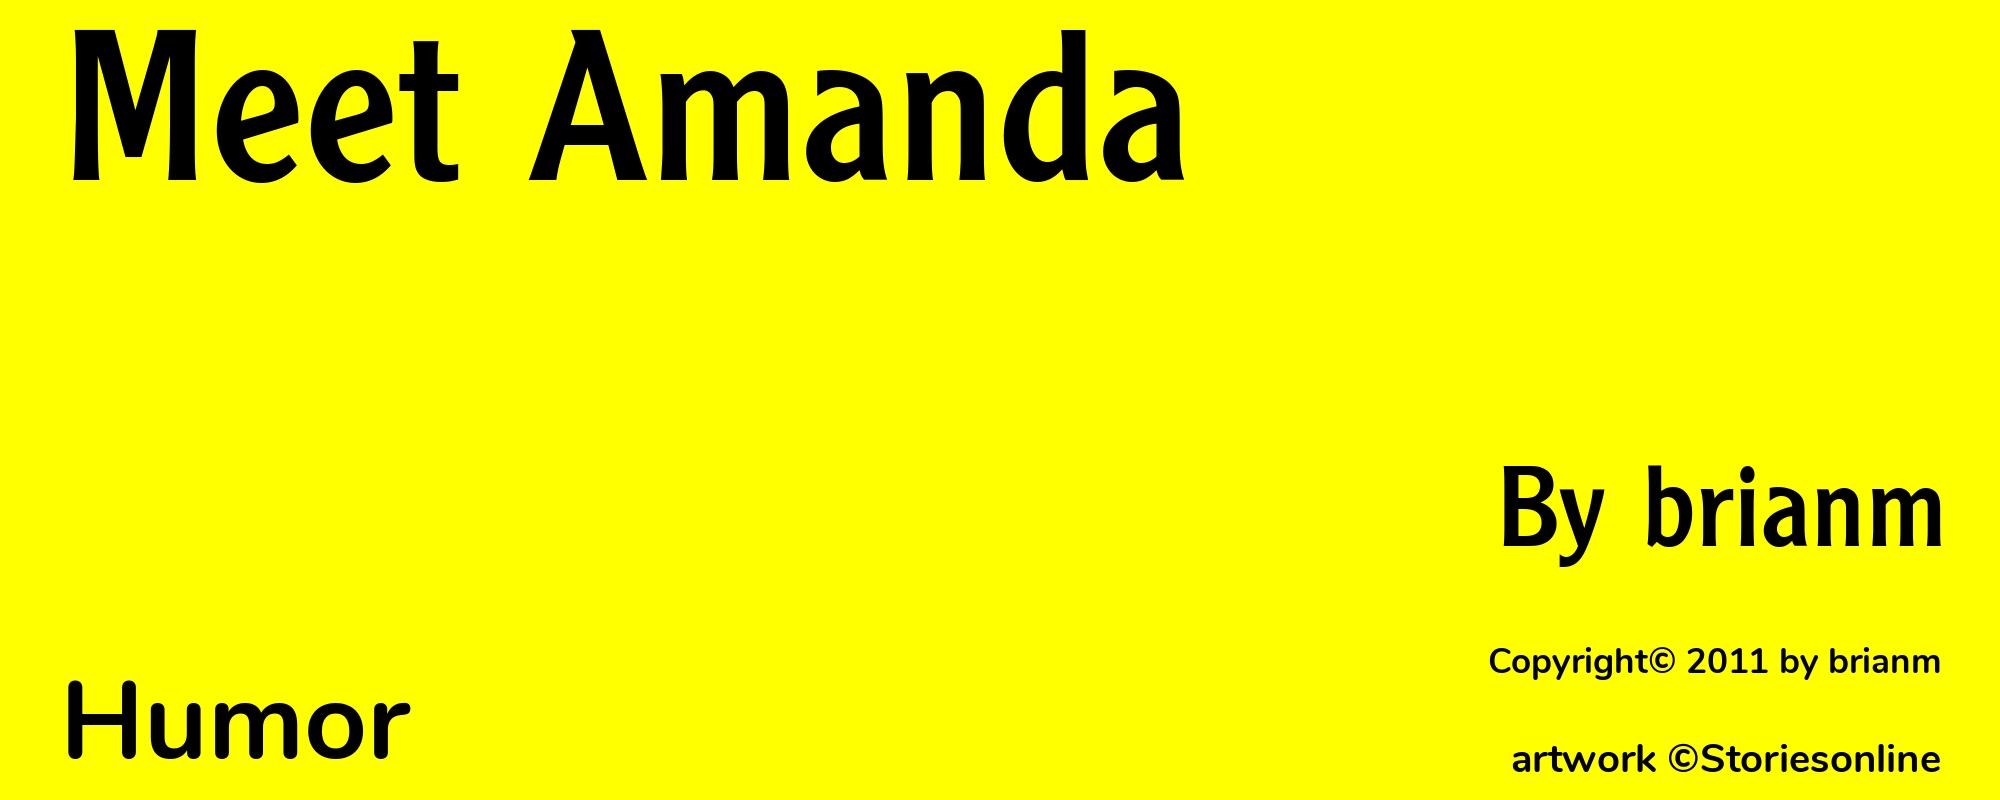 Meet Amanda - Cover